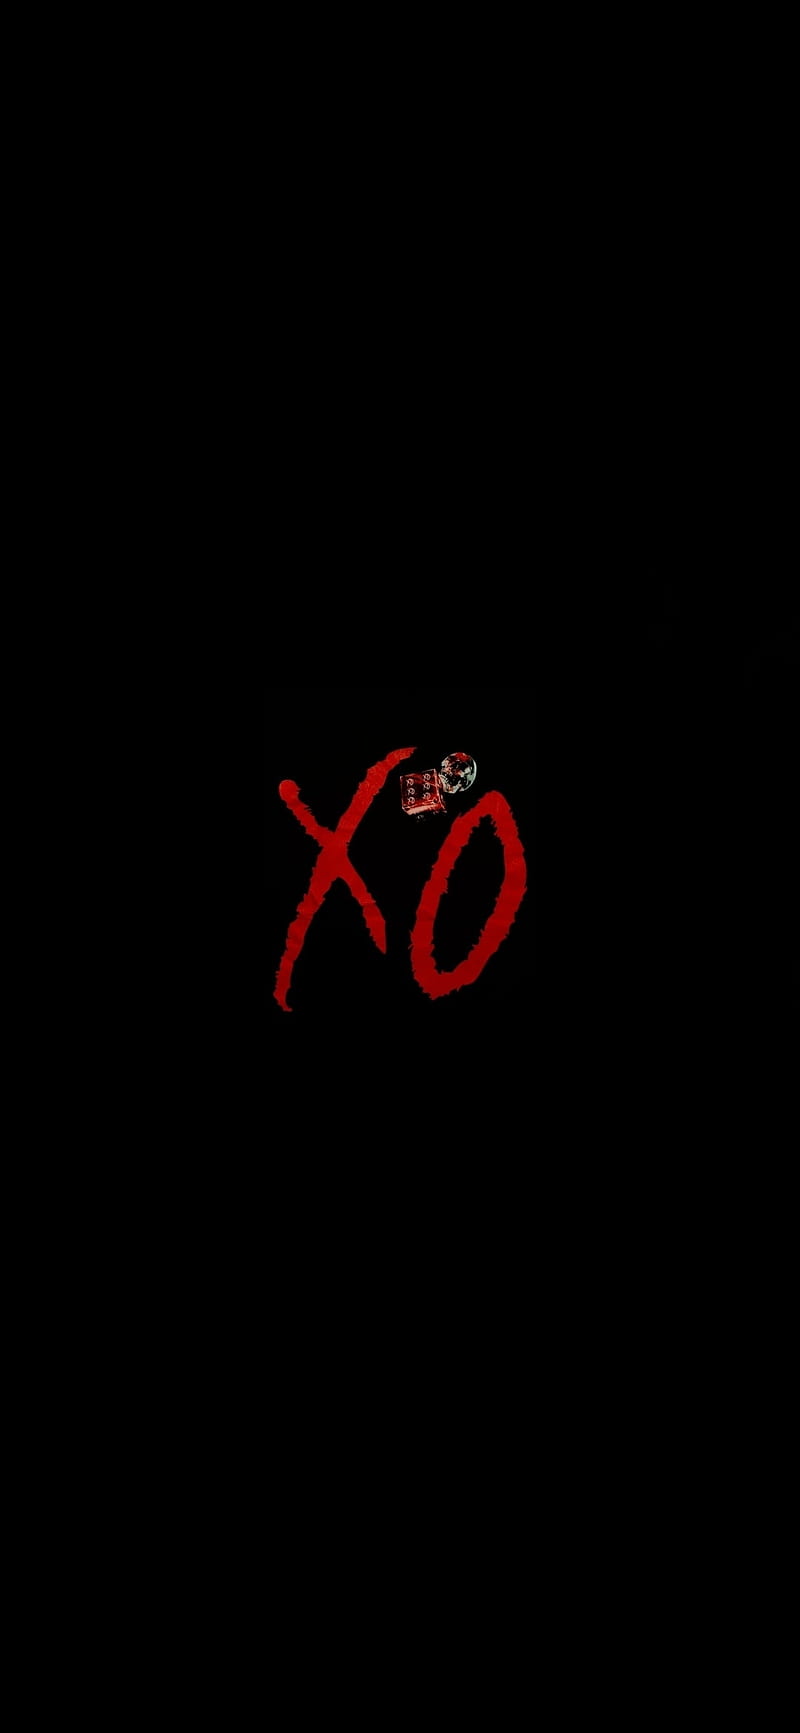 Hình nền XO Casino Logo sẽ khiến cho màn hình của bạn trở nên ấn tượng và phong cách hơn rất nhiều. Hãy tham khảo ngay hình ảnh liên quan để tìm cho mình kiểu dáng độc đáo nhất nào!